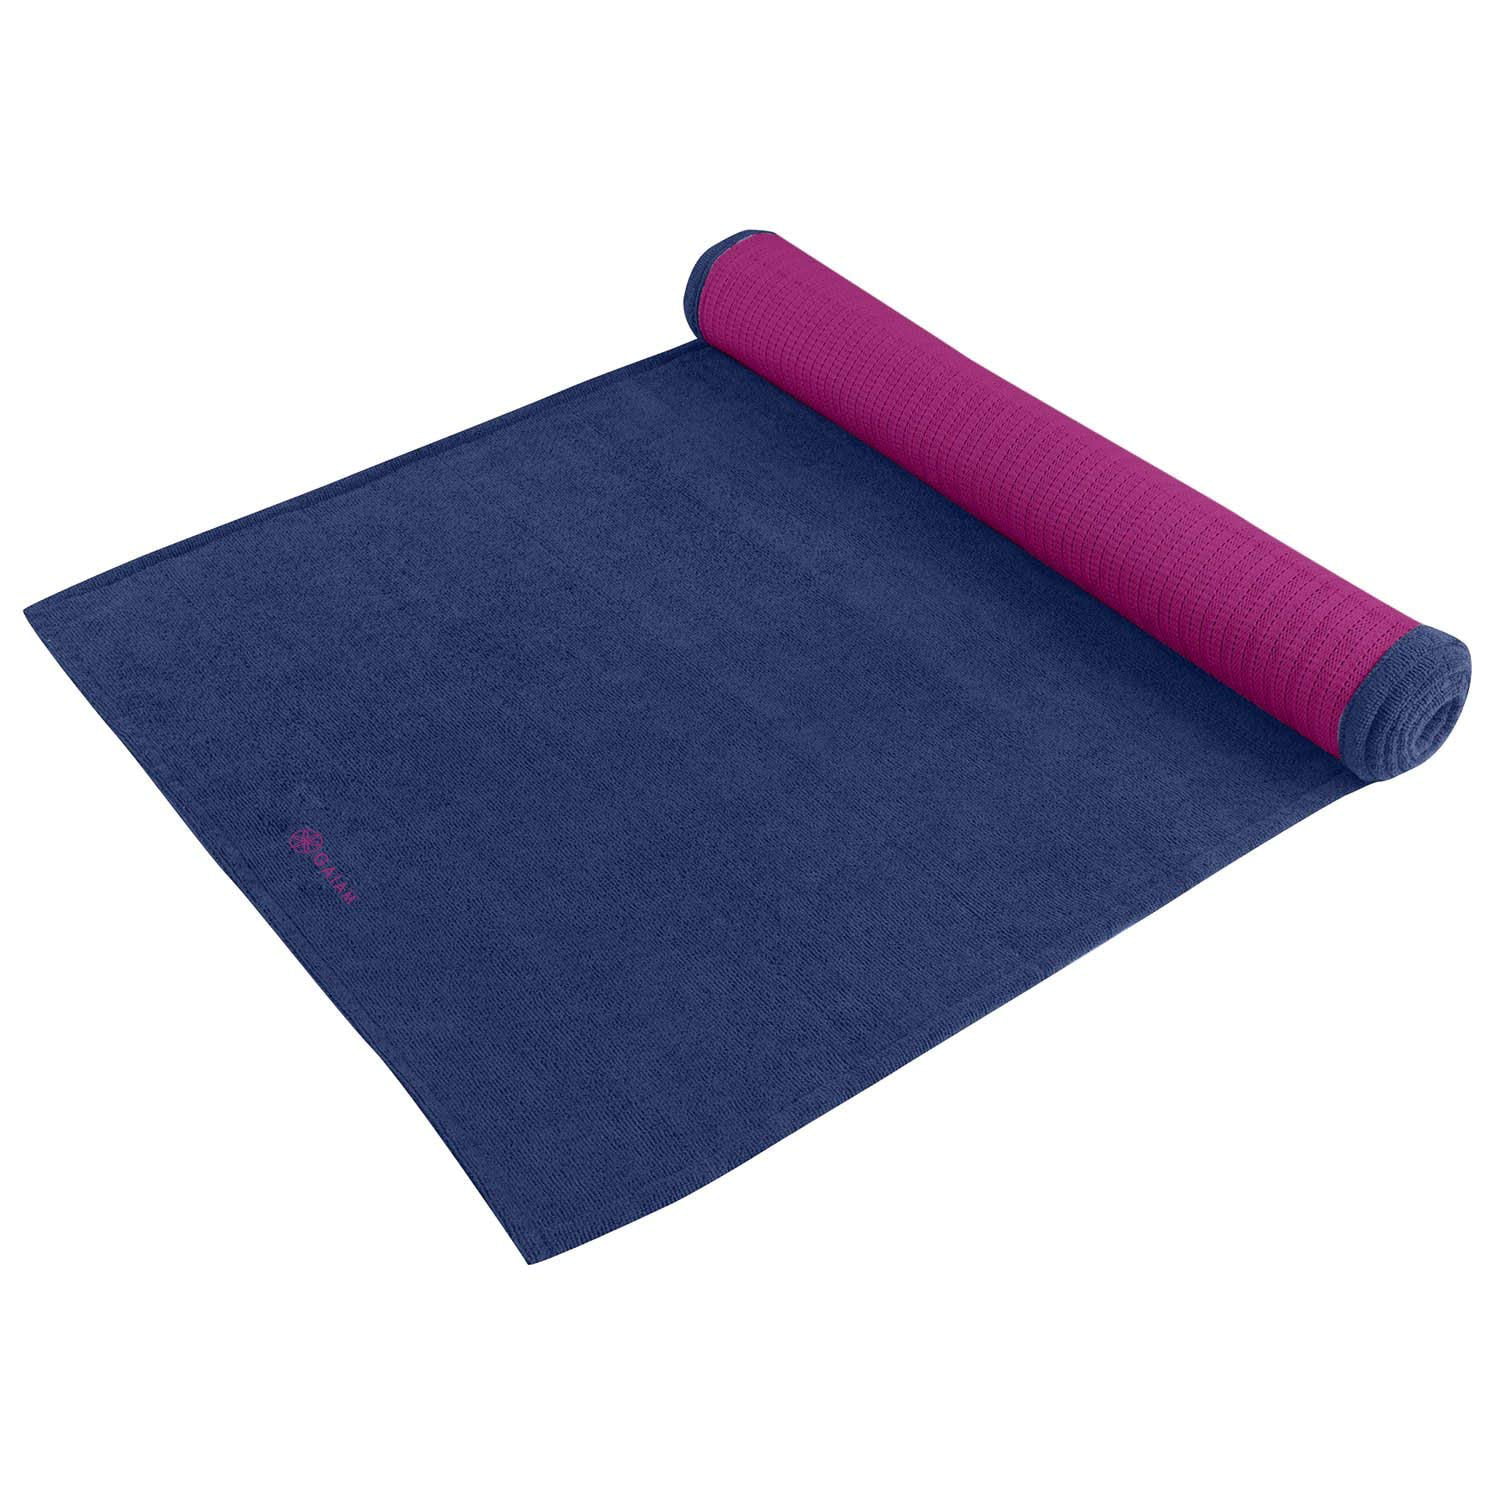 Размер коврика для йоги. Gaiam коврик для йоги. Коврики для йоги микрофибра. Коврик для йоги синий. Коврики для йоги из полиэстера.